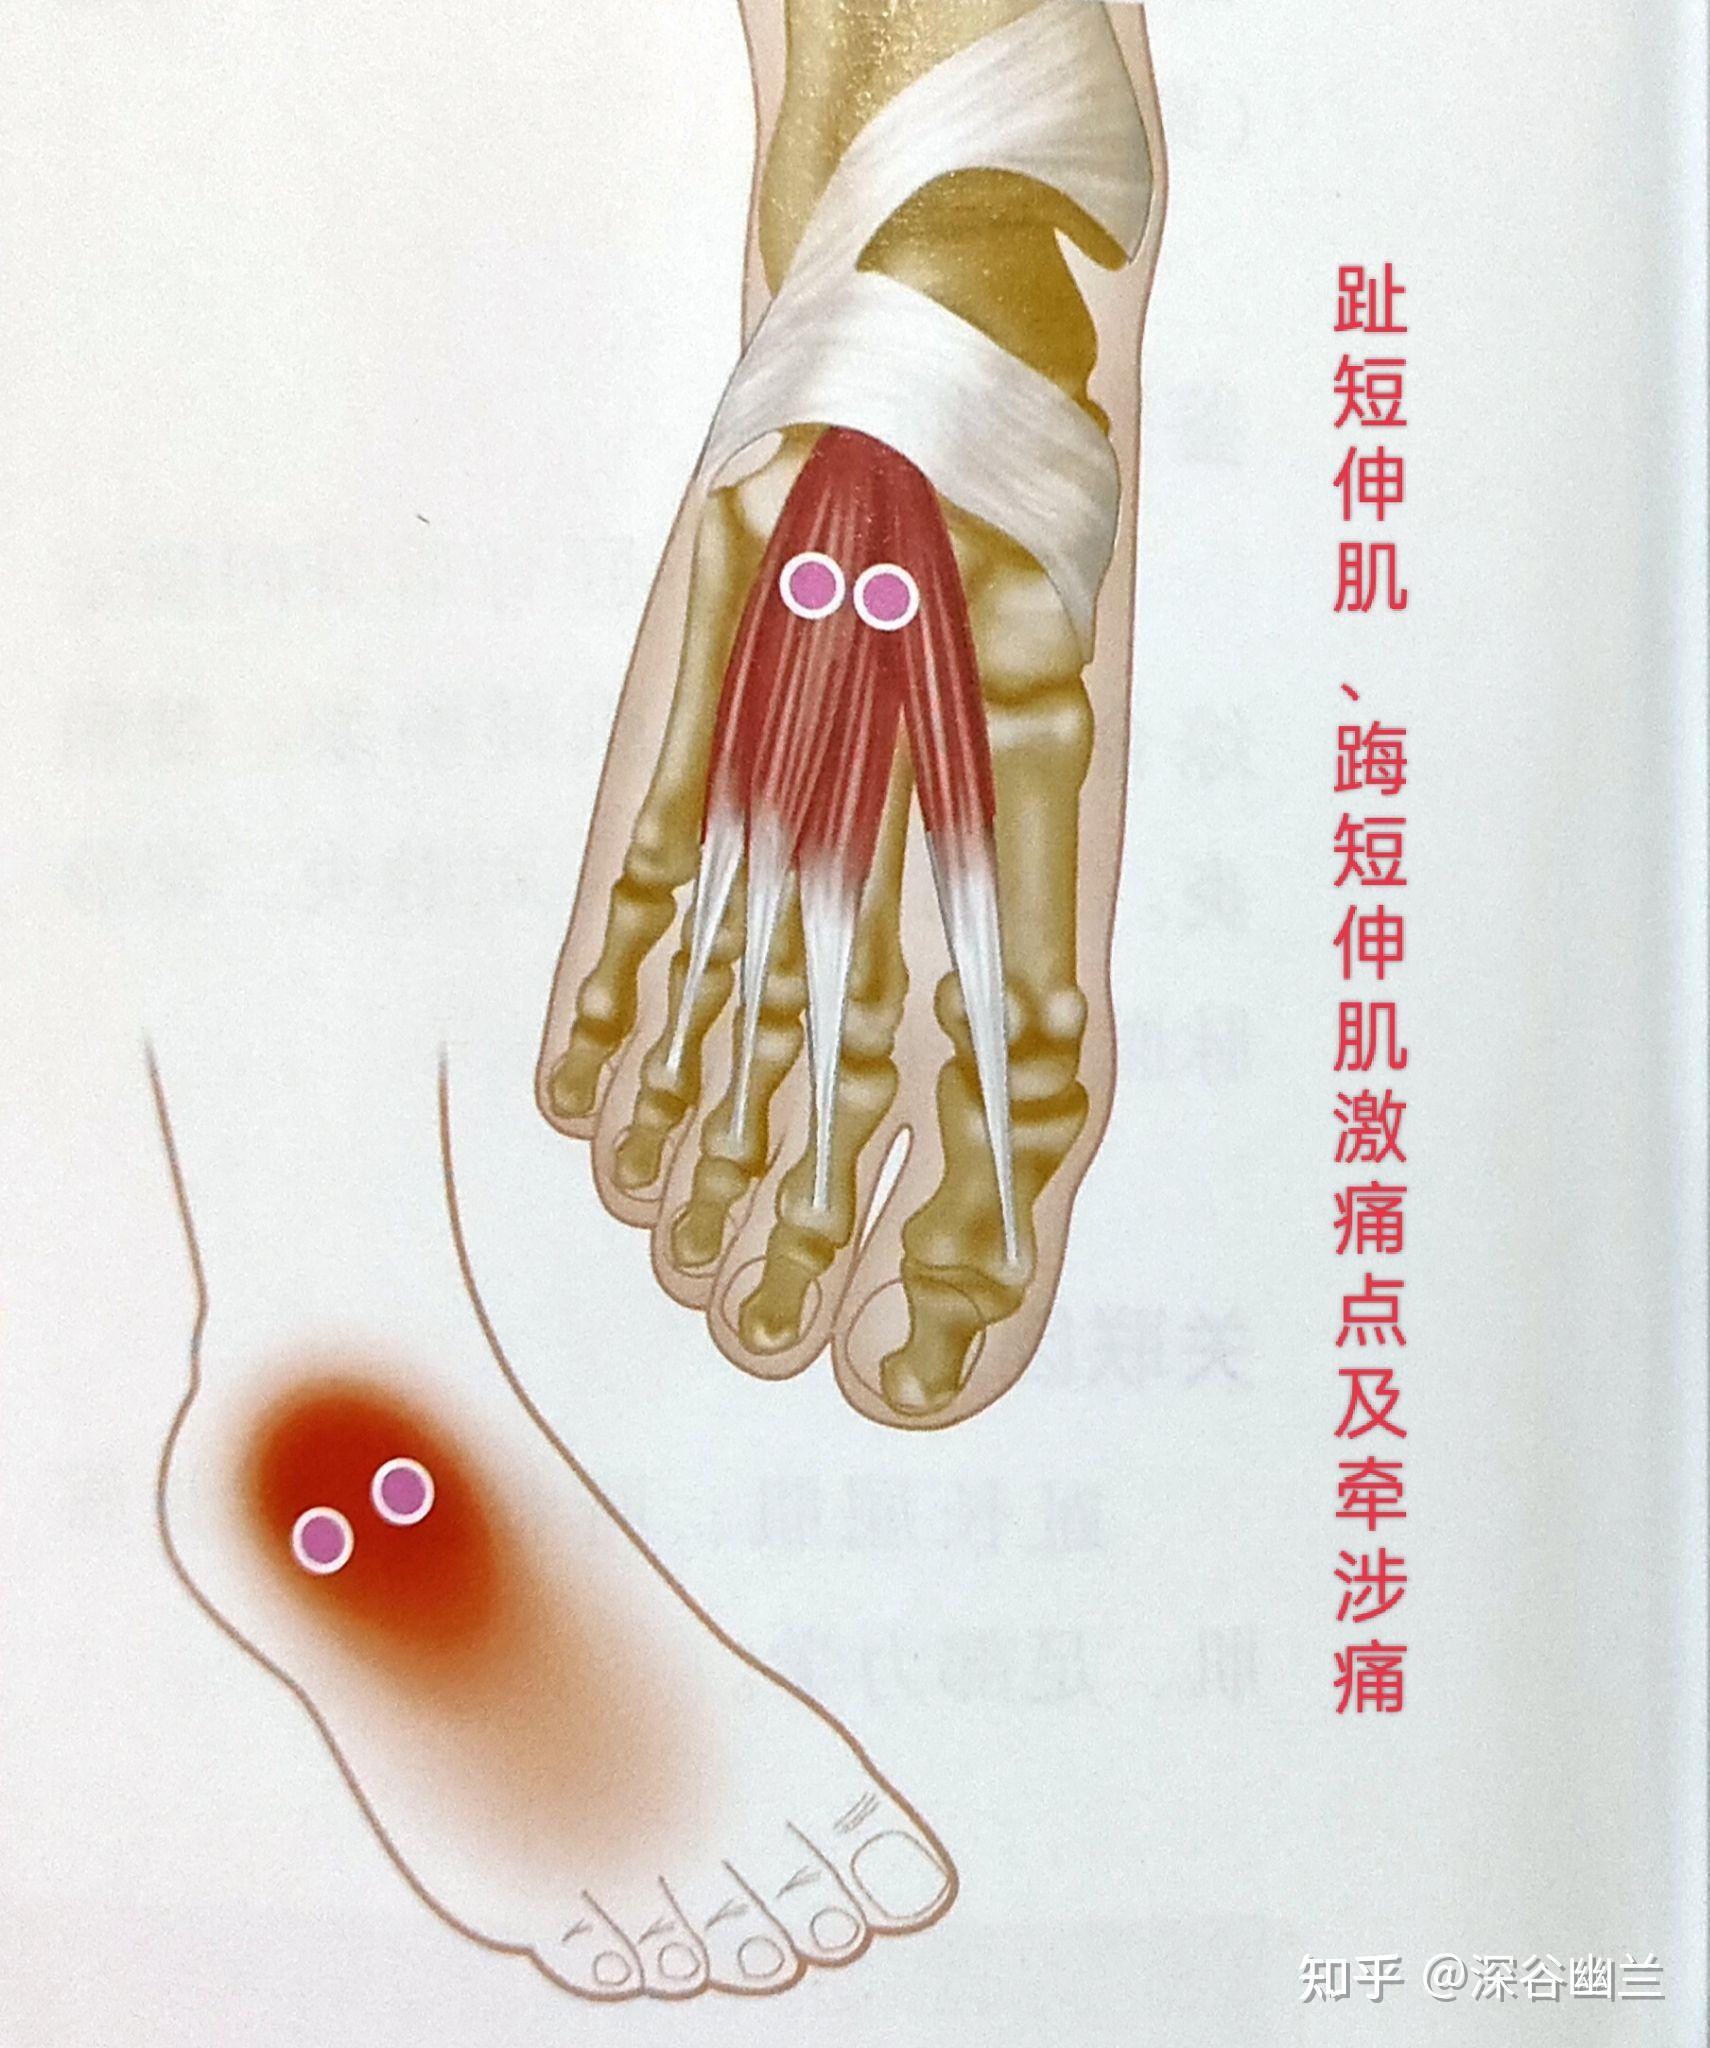 它们的激痛点牵涉痛在脚背外踝下方4～5厘米椭圆形区域强烈疼痛